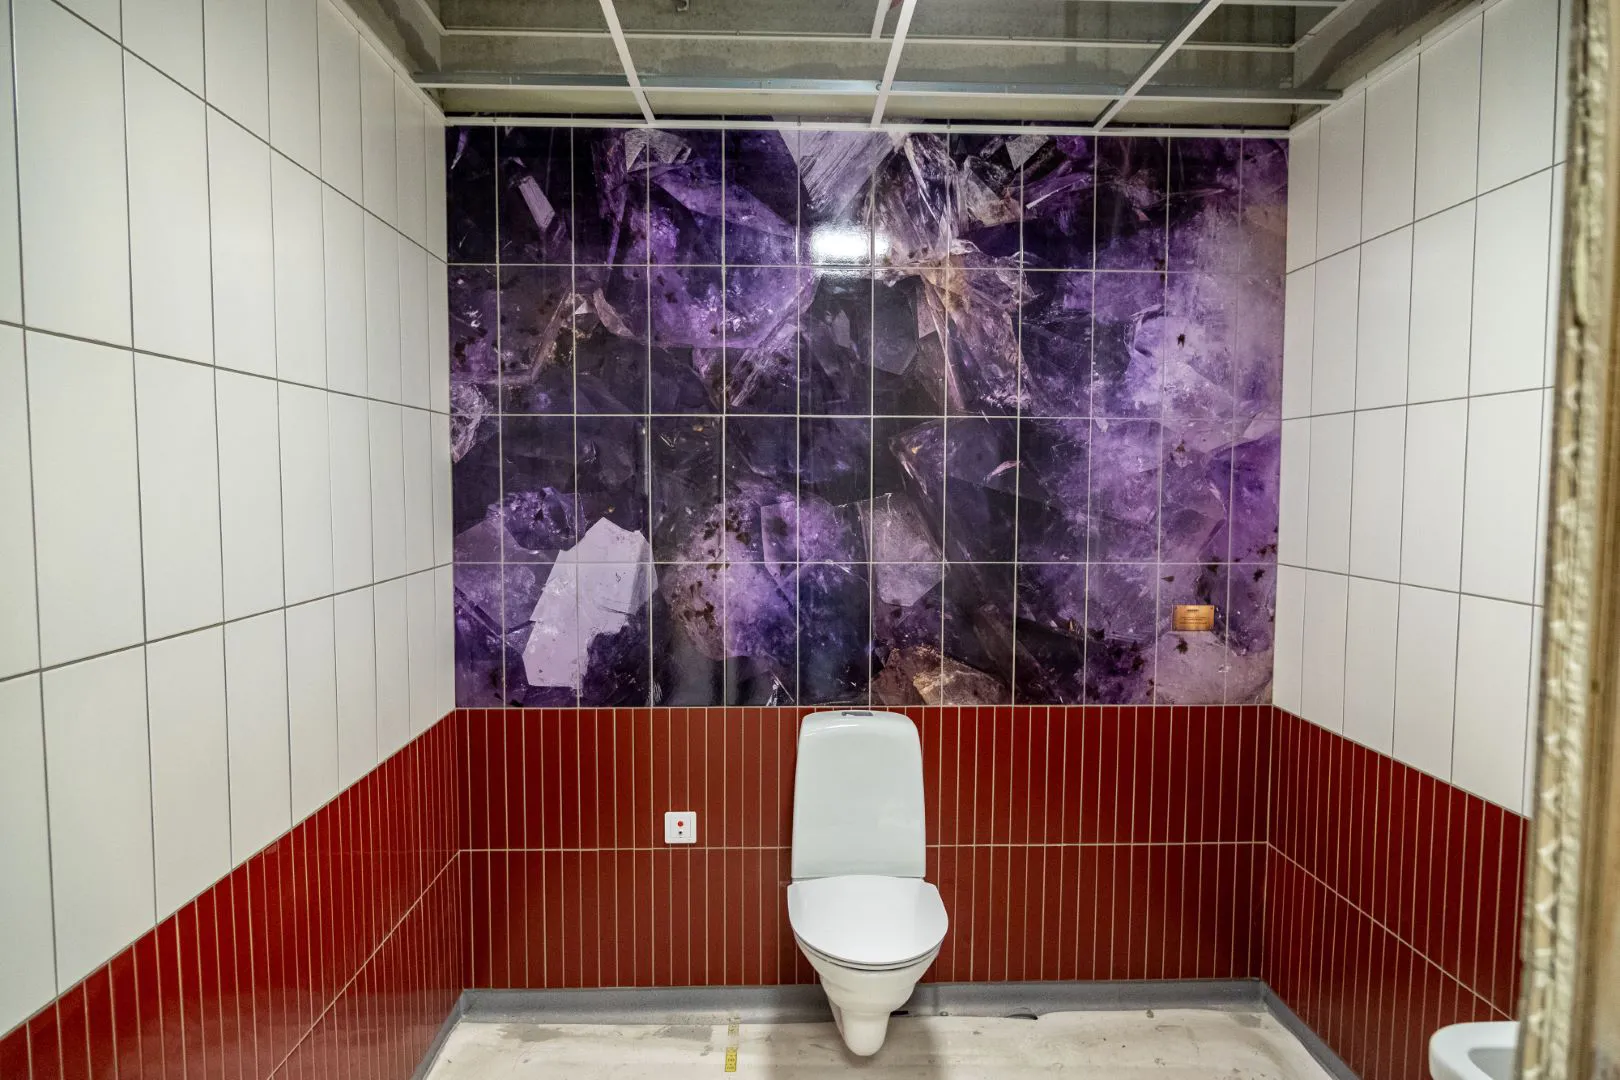 Toalett med rött och vitt kakel, vägg bakom toalett har ett motiv av ametist